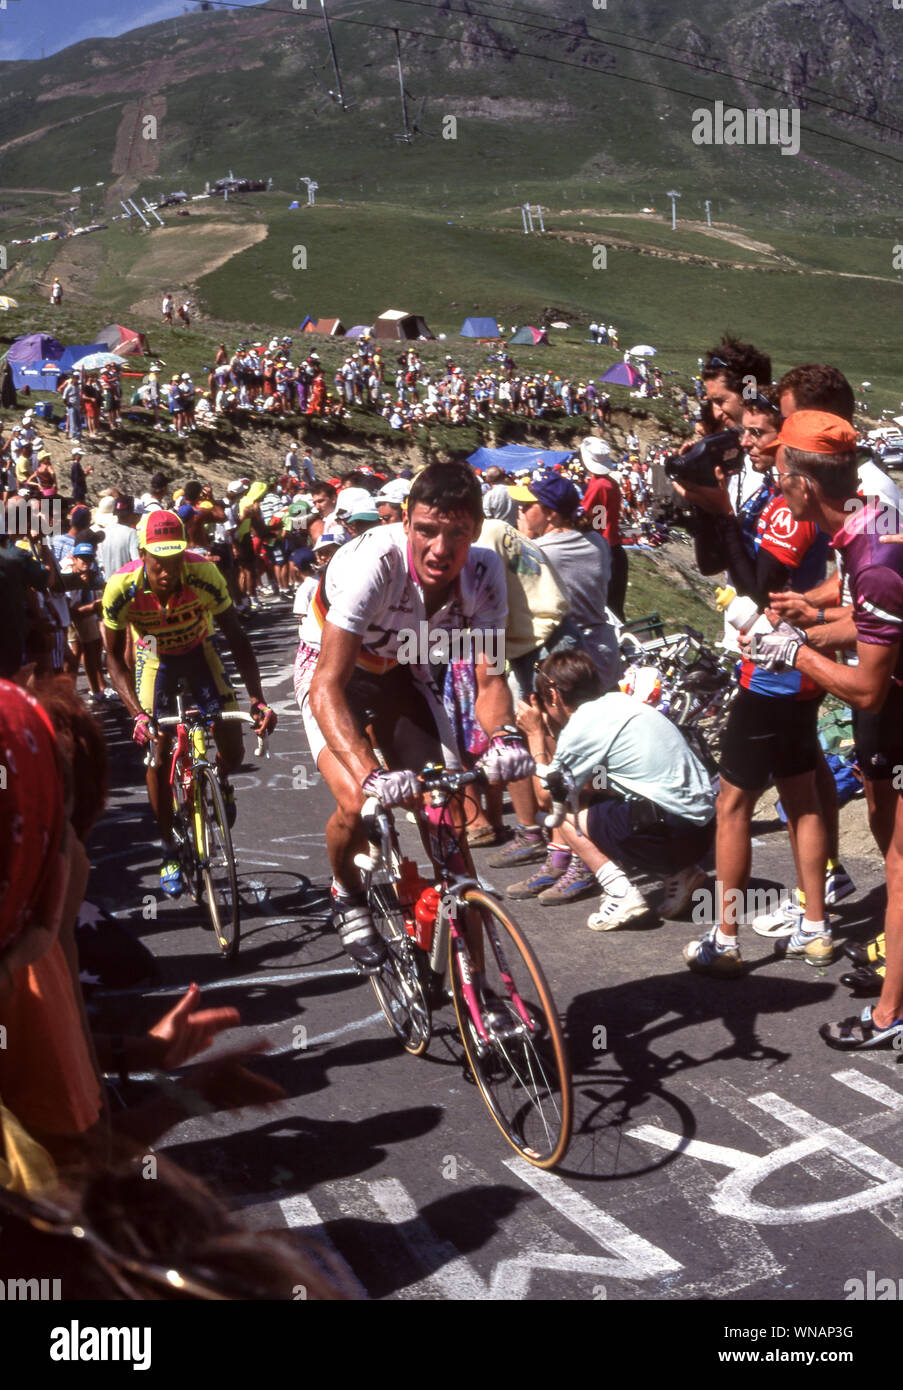 Tour de France cycling race.France Stock Photo